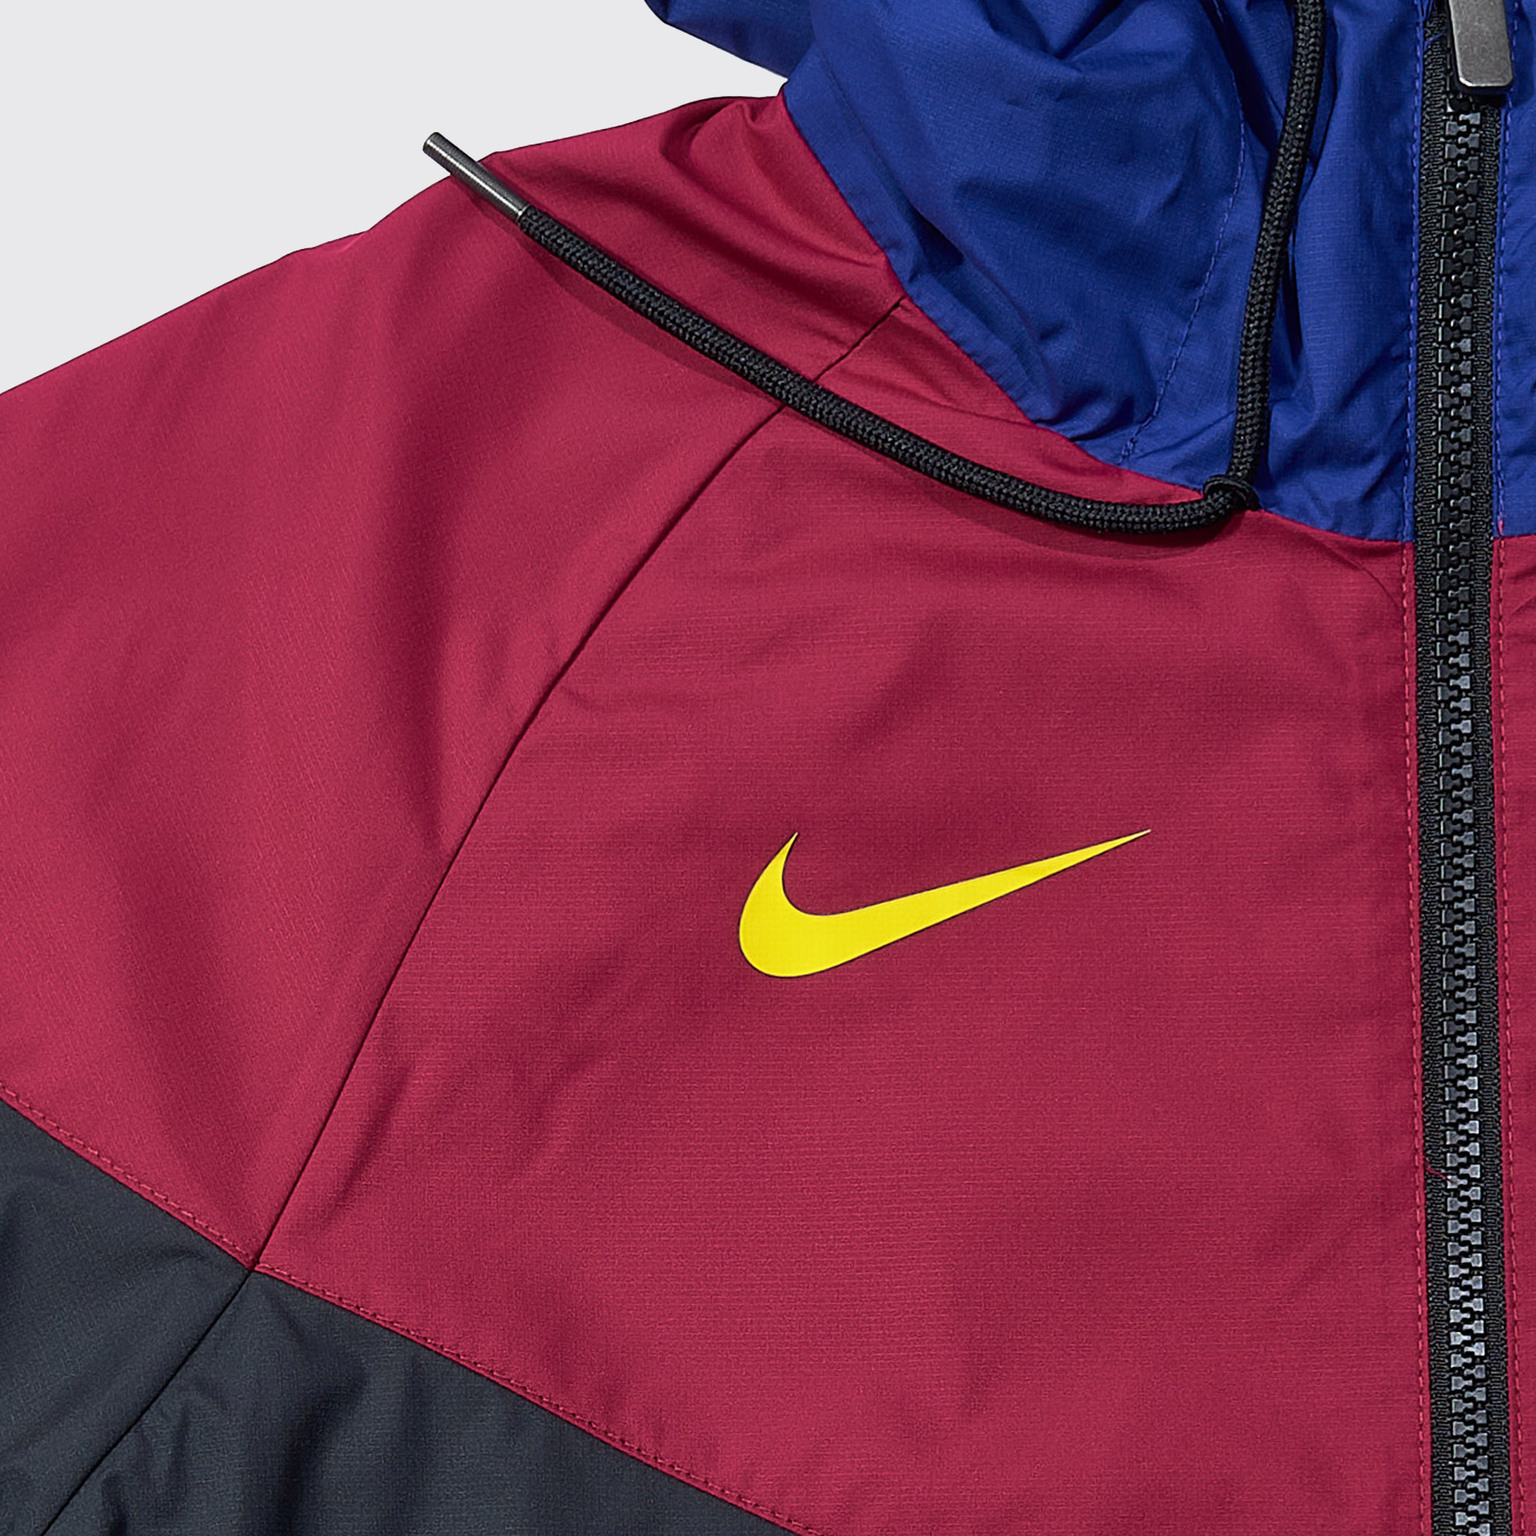 Ветровка Nike Barcelona сезон 2020/21